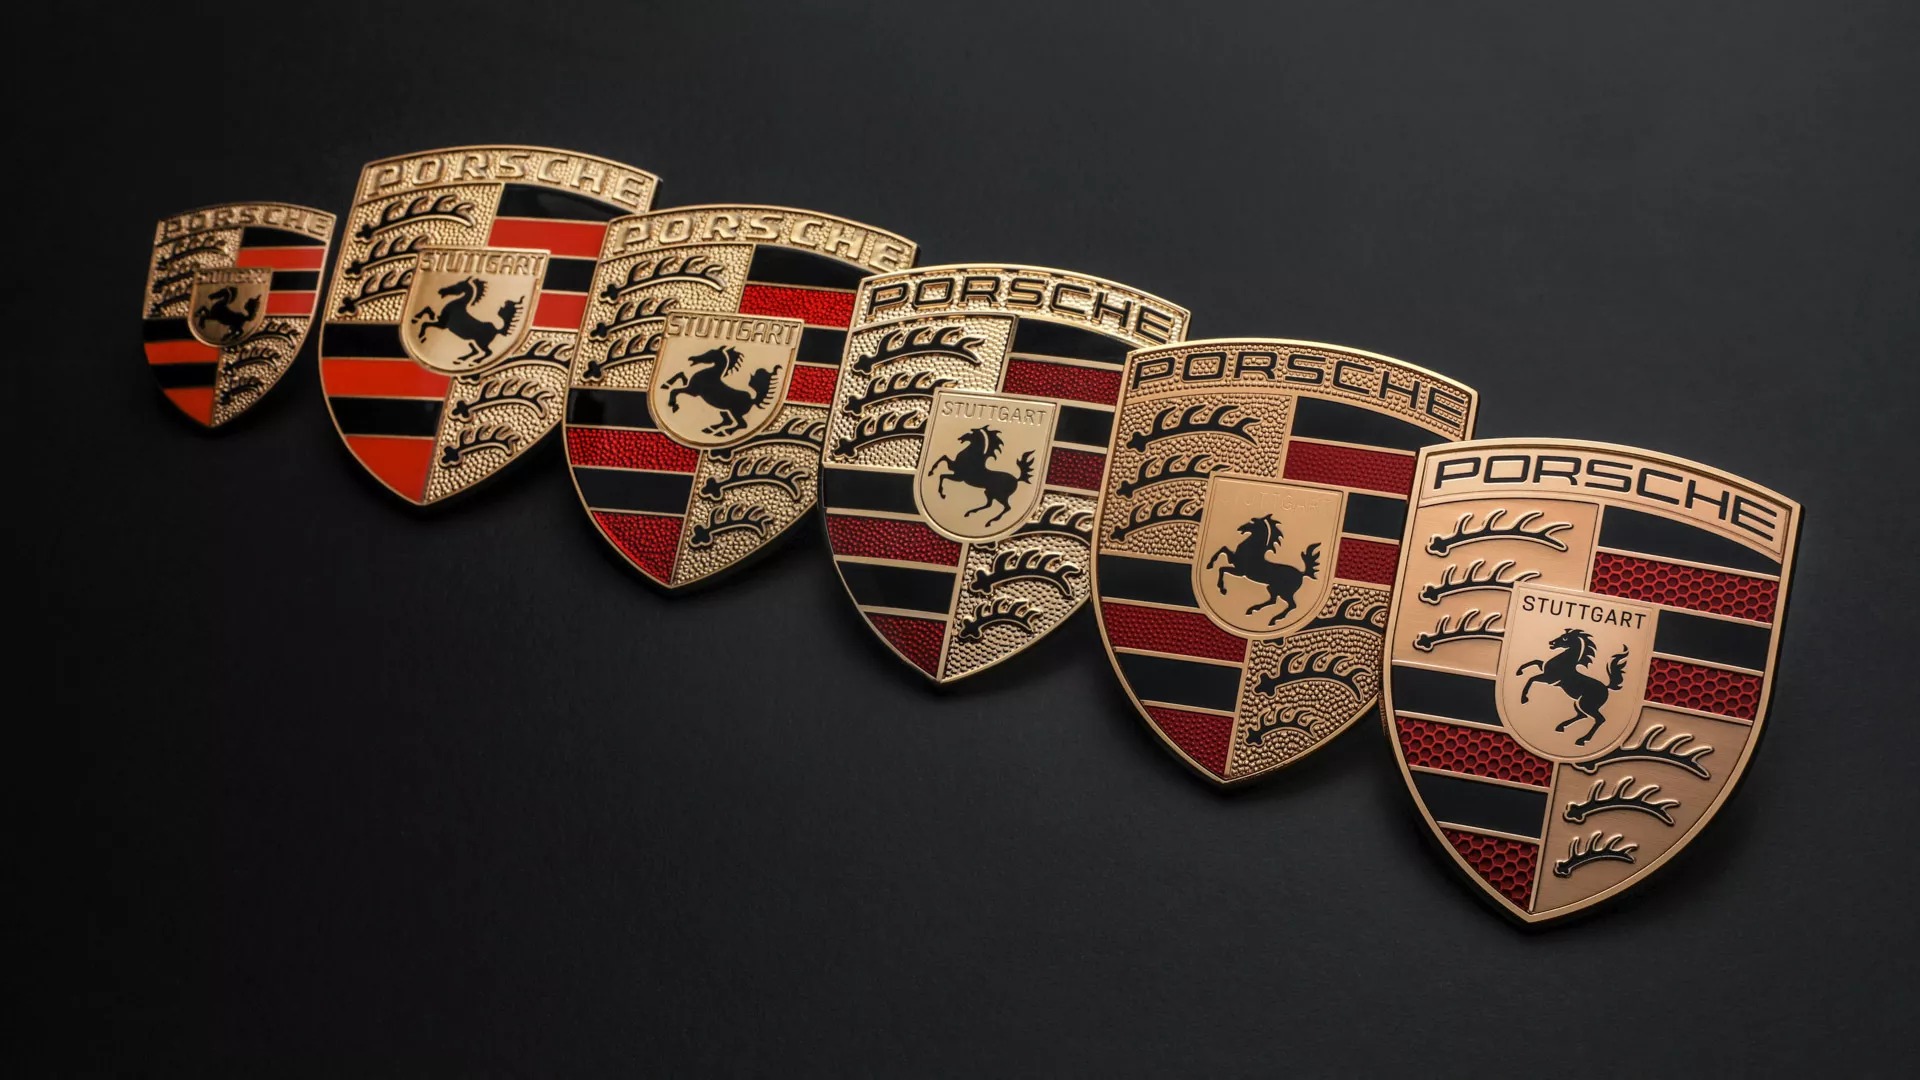 Porsche tốn 3 năm để làm logo mới nhưng phải tinh mắt lắm mới tìm ra điểm khác biệt - ảnh 2